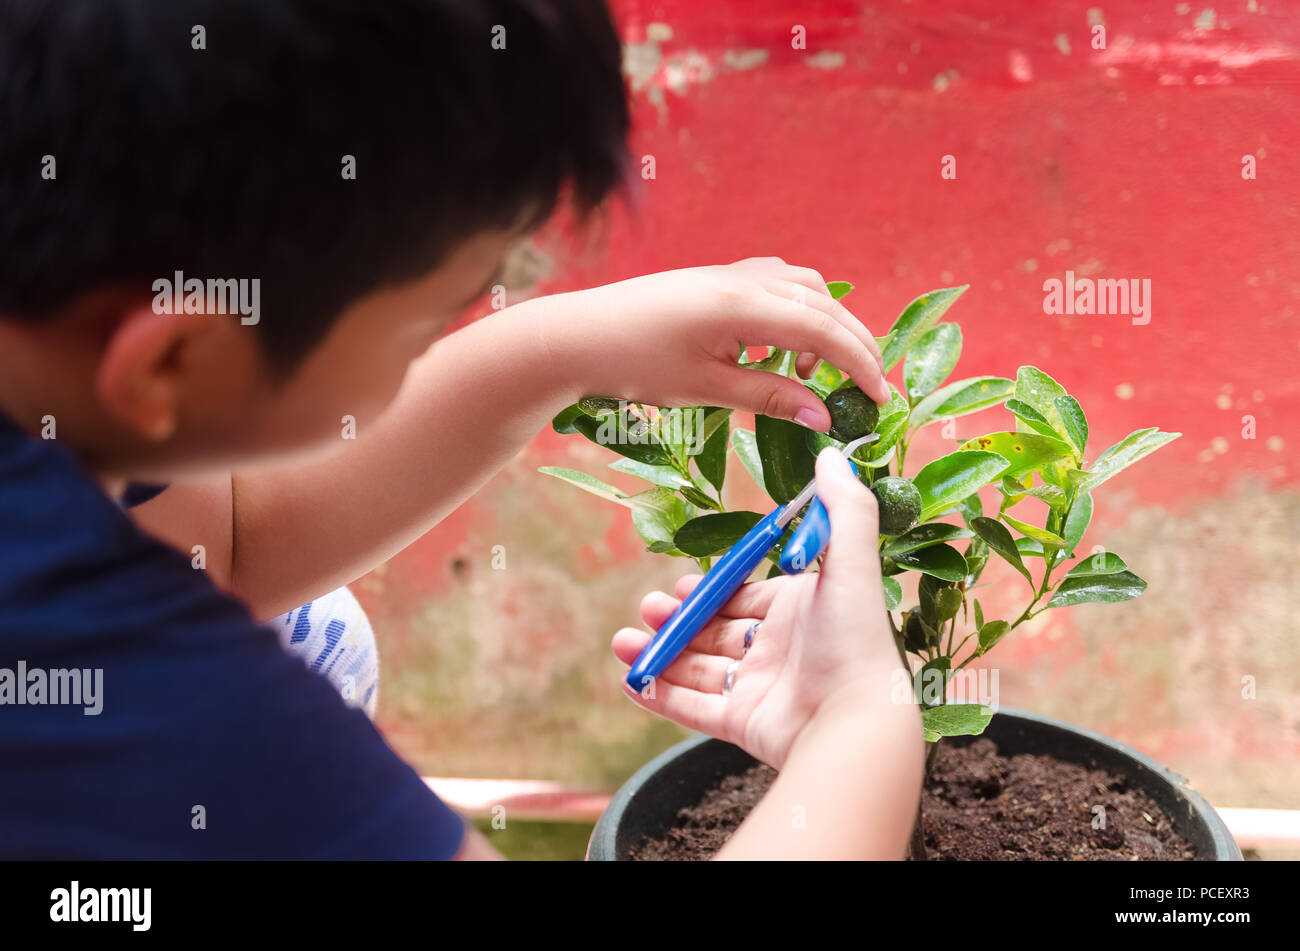 Giovane ragazzo calamansi raccolta frutti da un giardino di casa Foto Stock